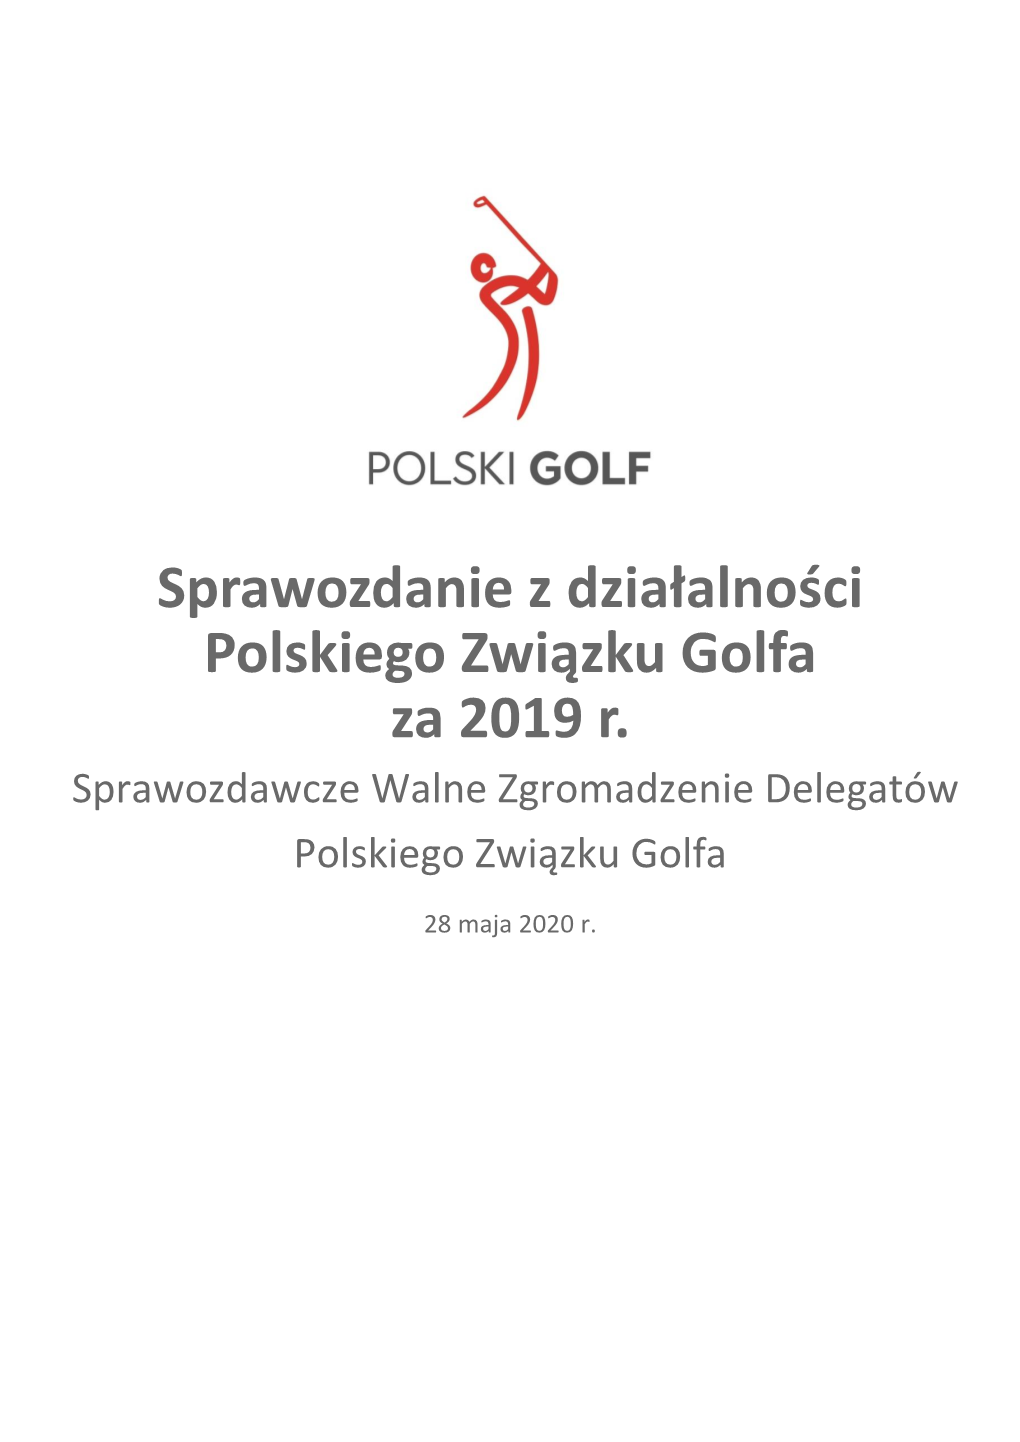 Sprawozdanie Z Działalności Polskiego Związku Golfa Za 2019 R. Sprawozdawcze Walne Zgromadzenie Delegatów Polskiego Związku Golfa